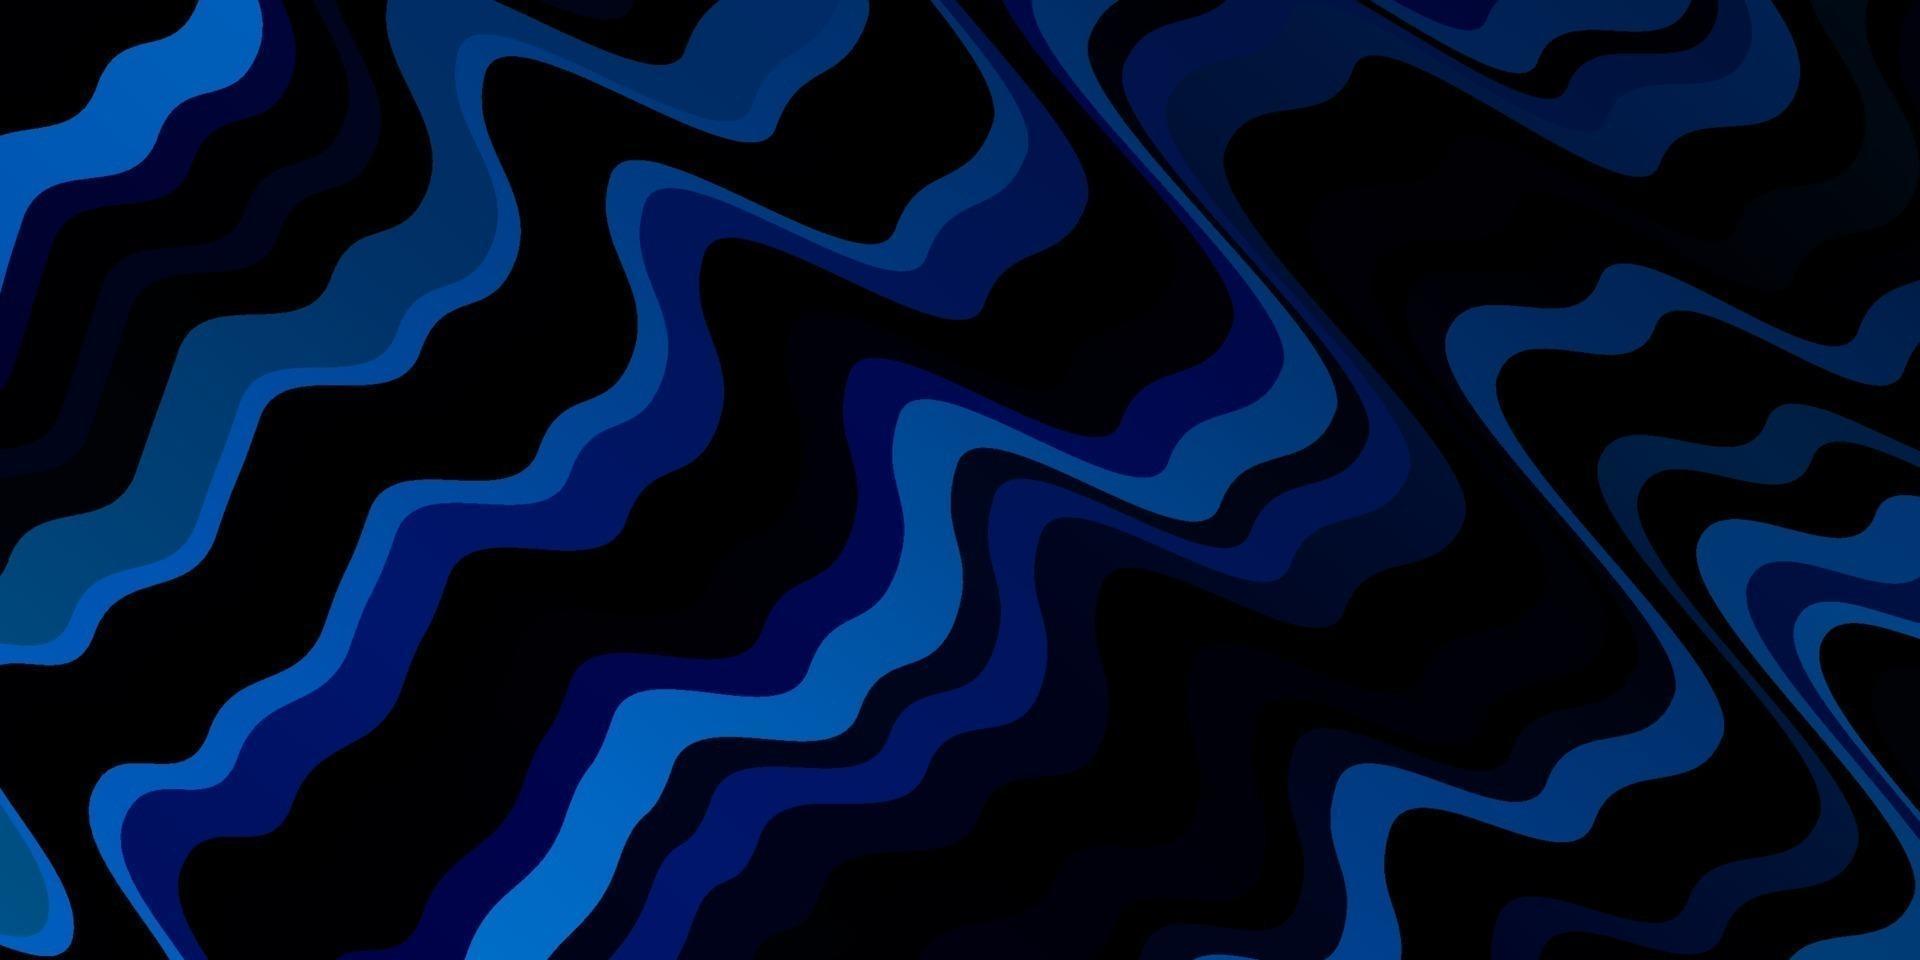 ljusblå vektormönster med sneda linjer. vektor